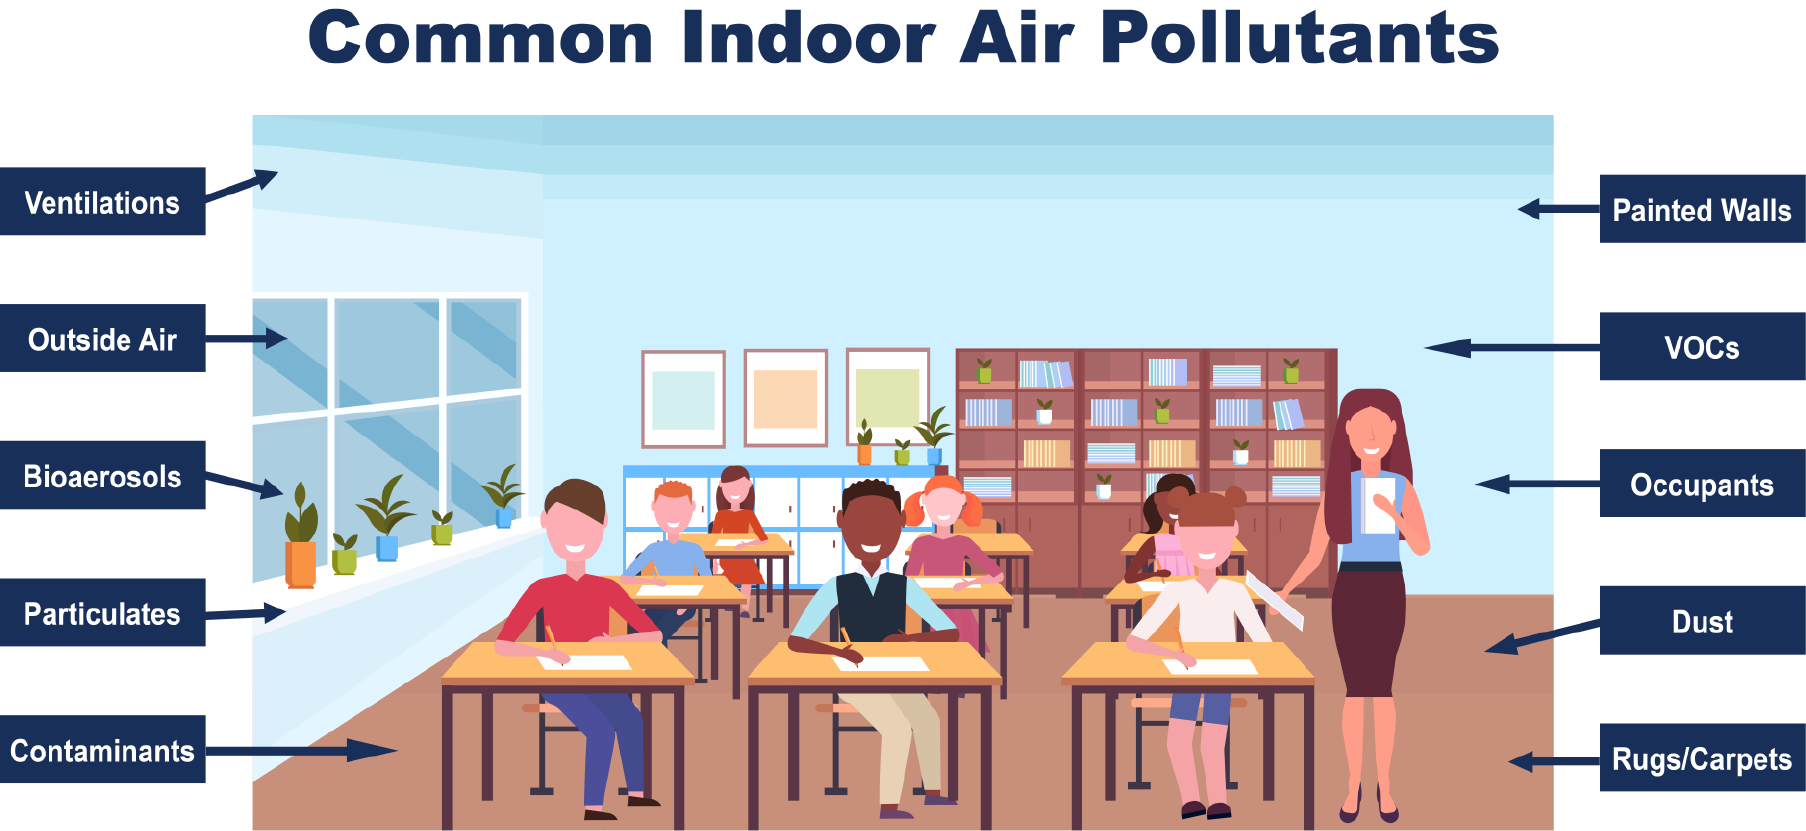 Common indoor air pollutants that effect IAQ in Schools.